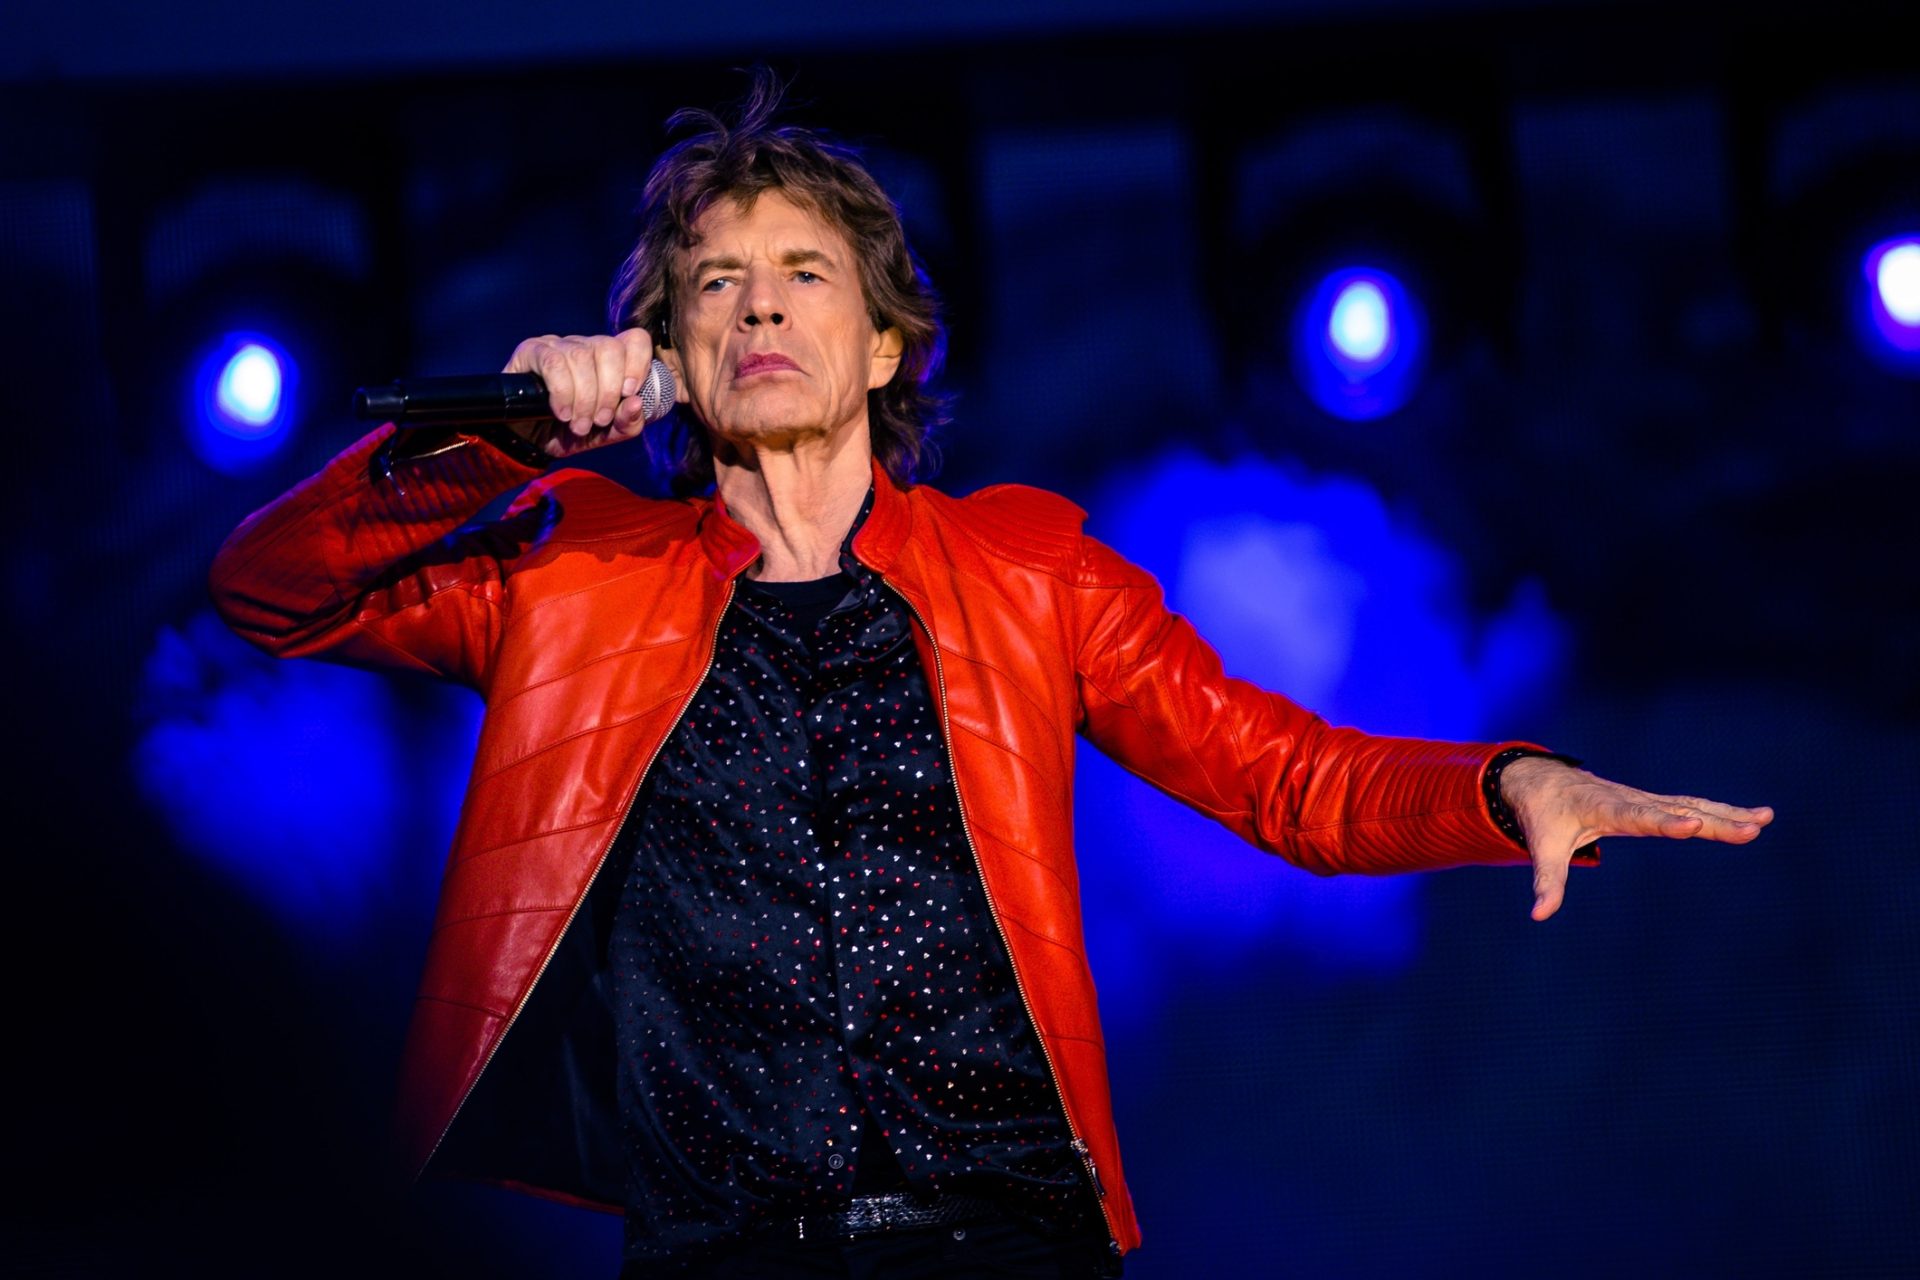 Os Rolling Stones vão lançar discos até “caírem para o lado”